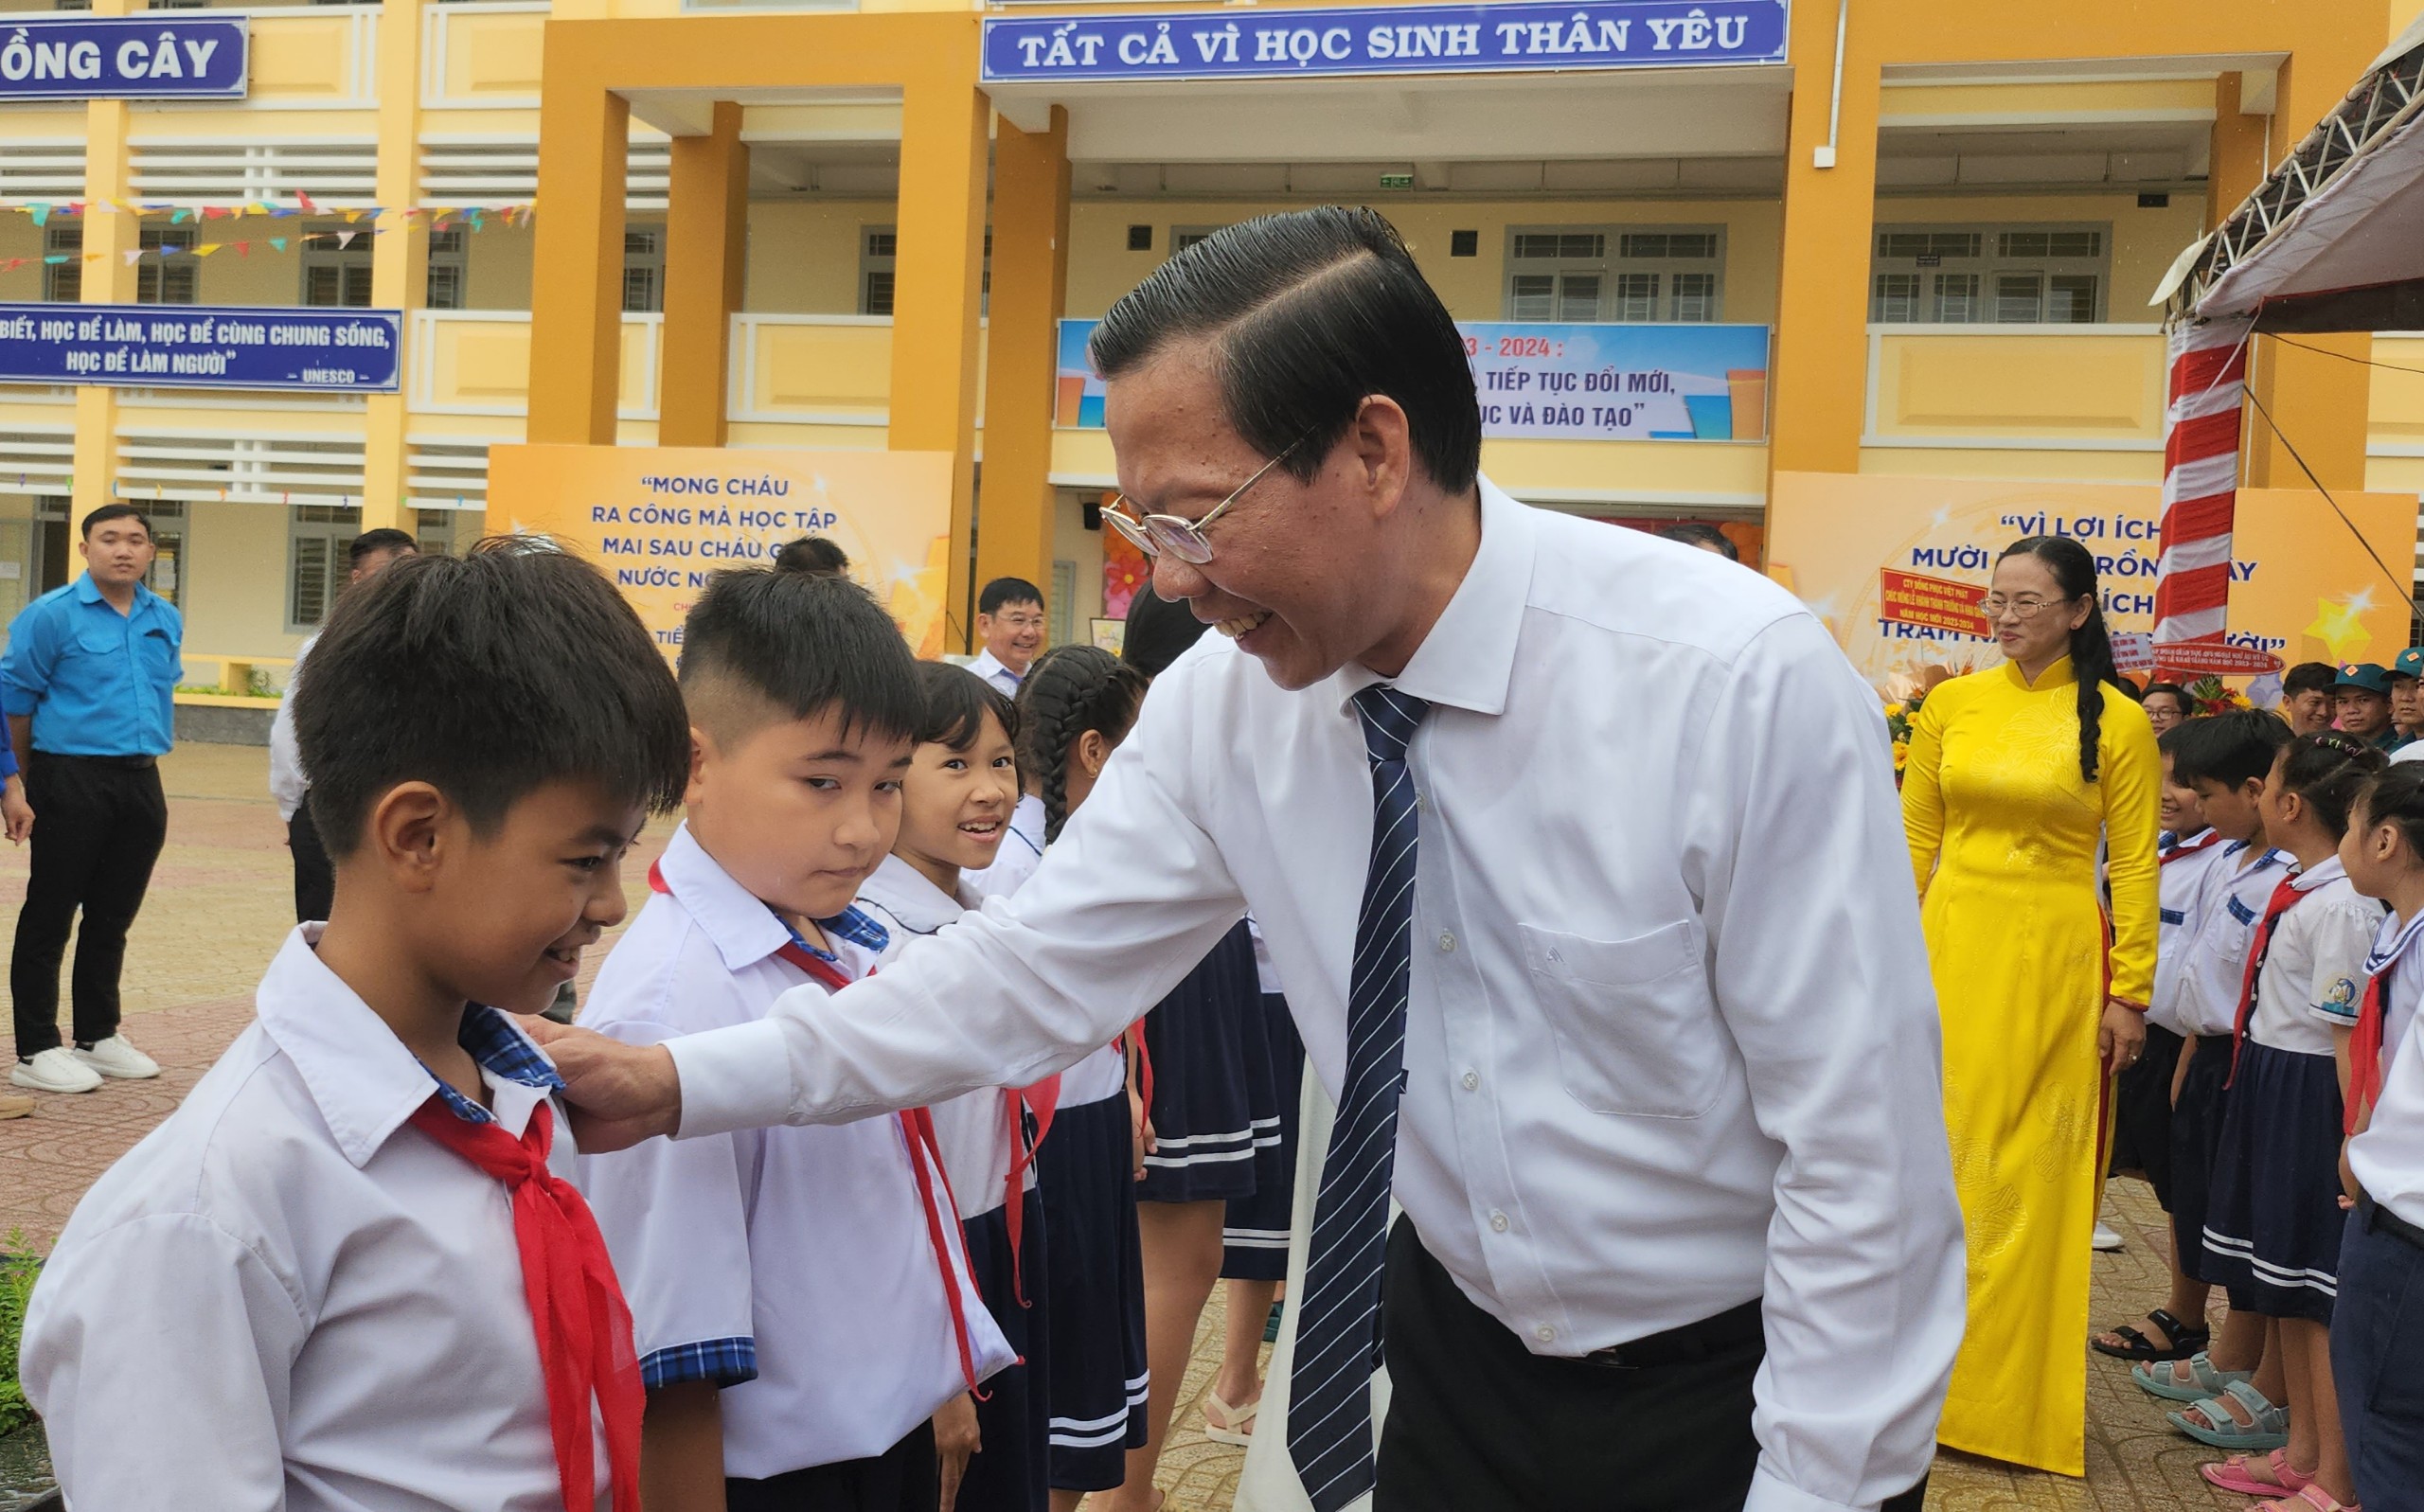 Chủ tịch Phan Văn Mãi dự khai giảng ở ngôi trường mới